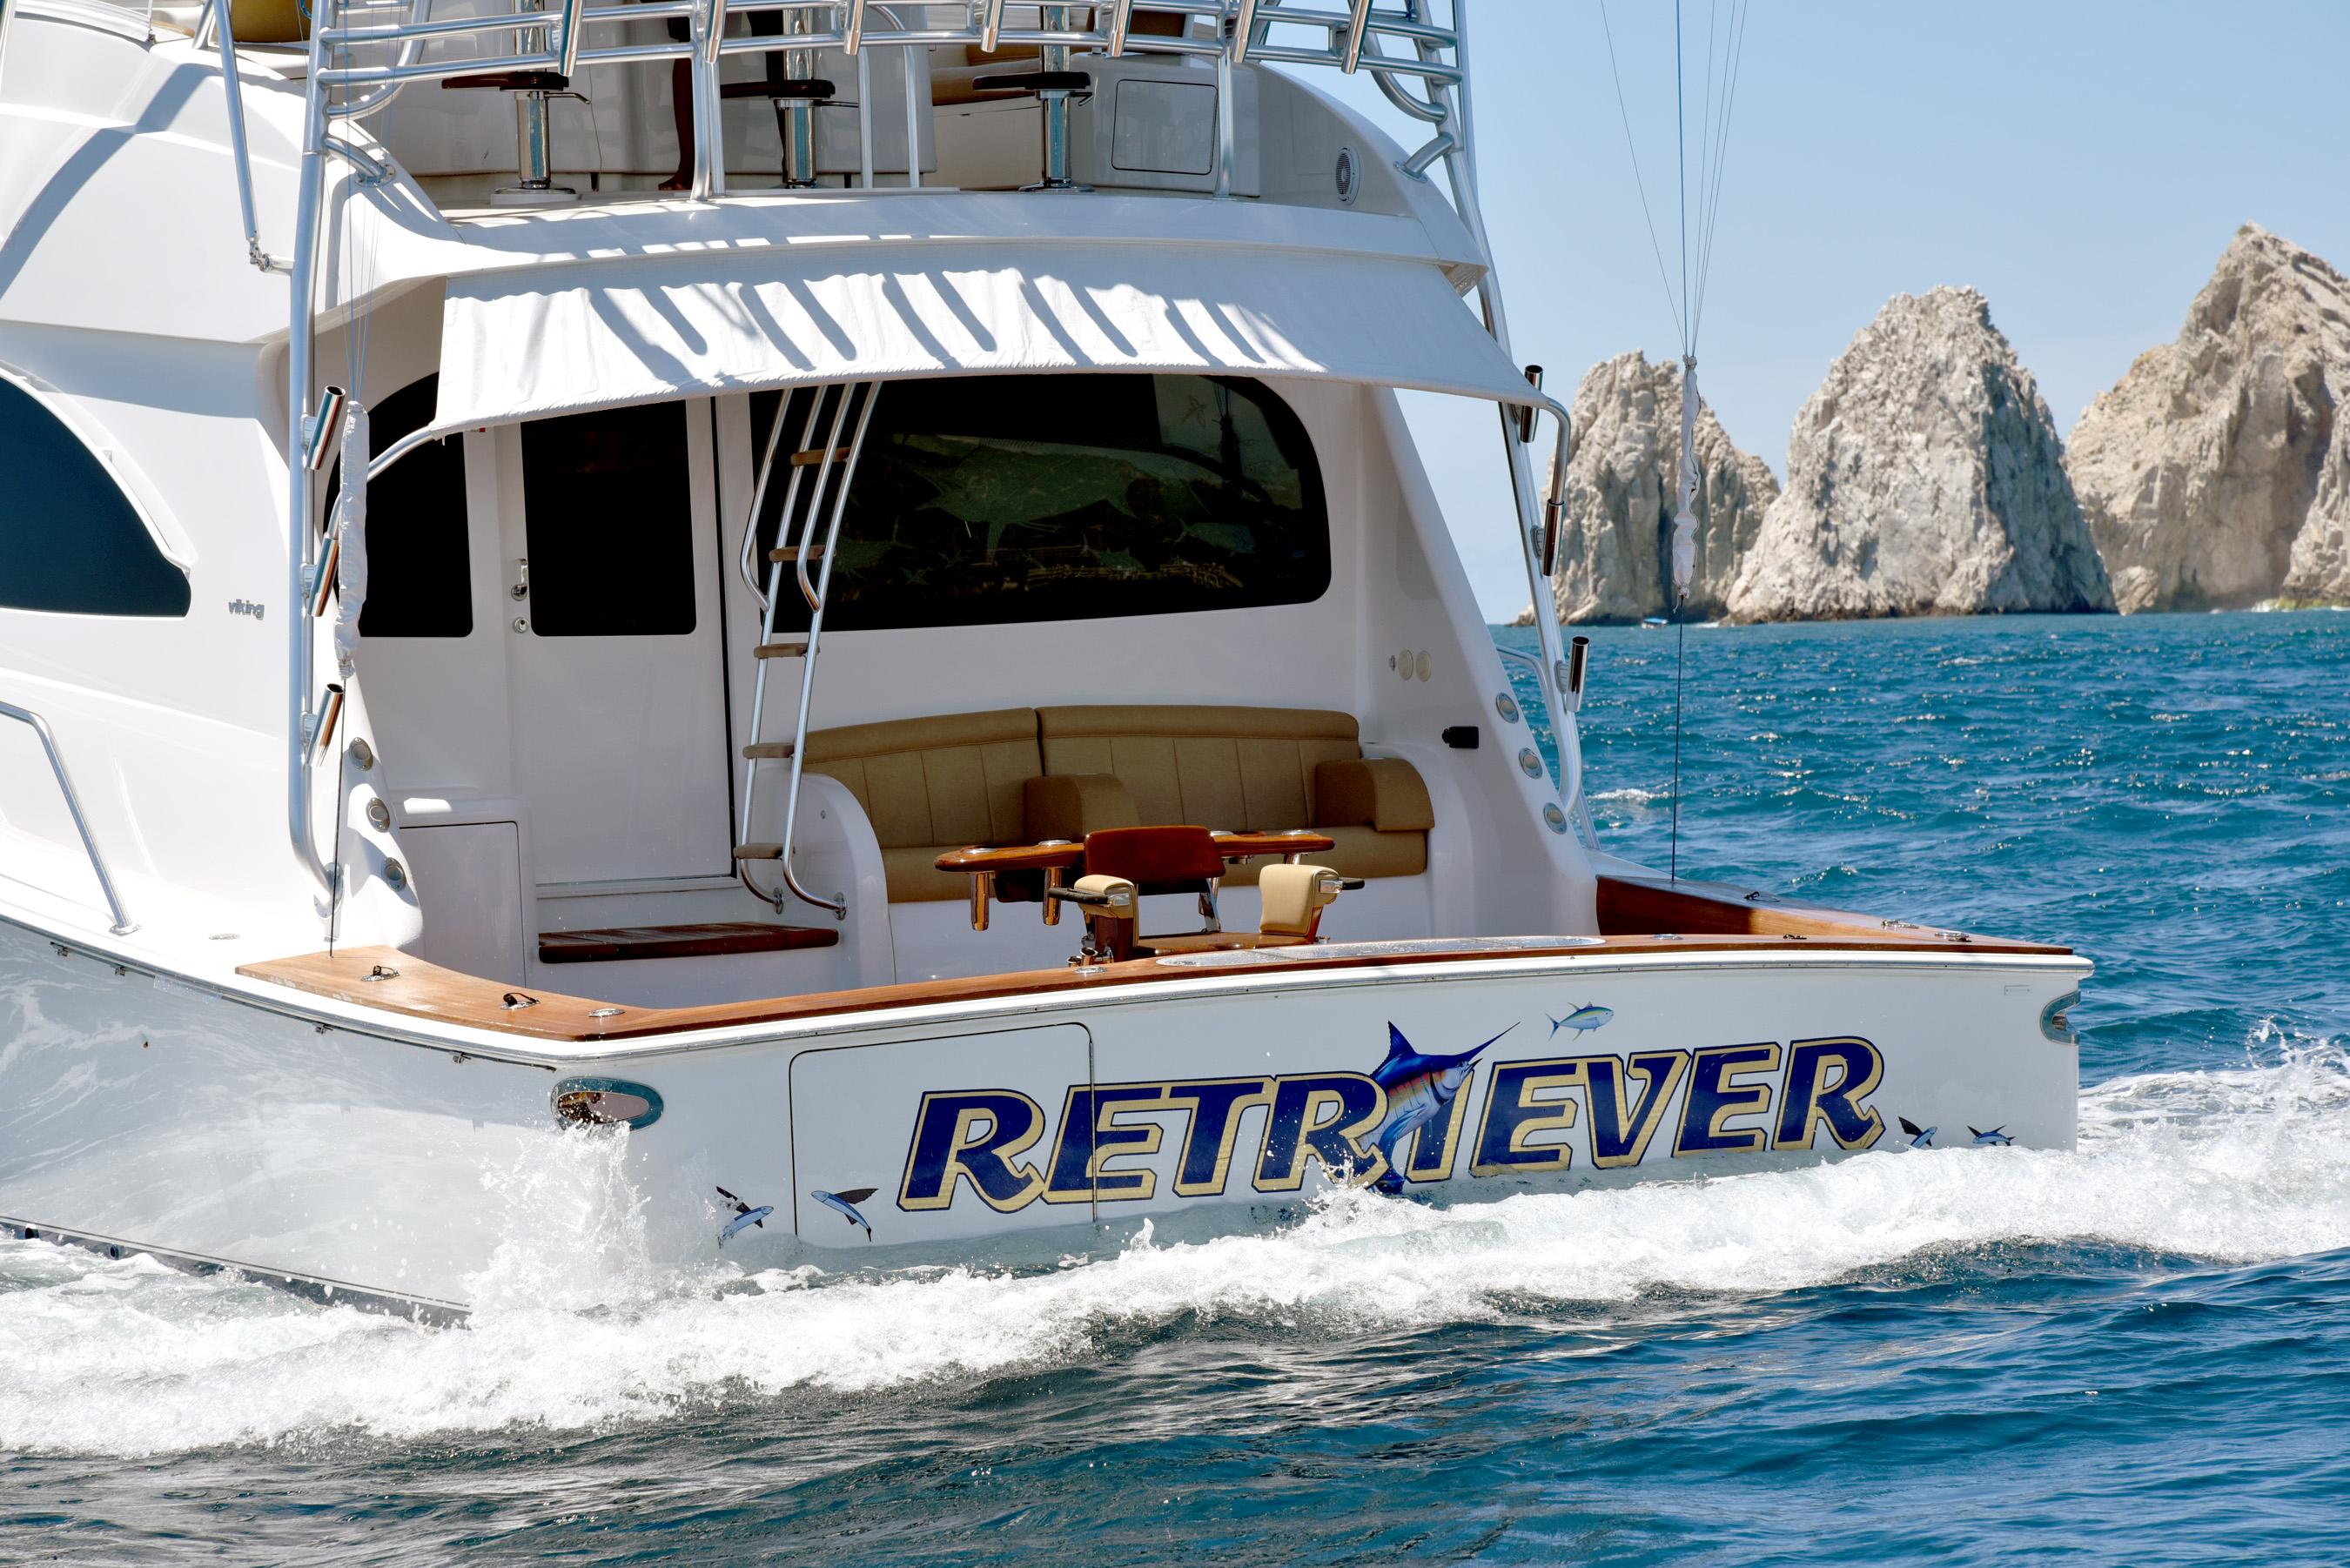 yacht named retriever